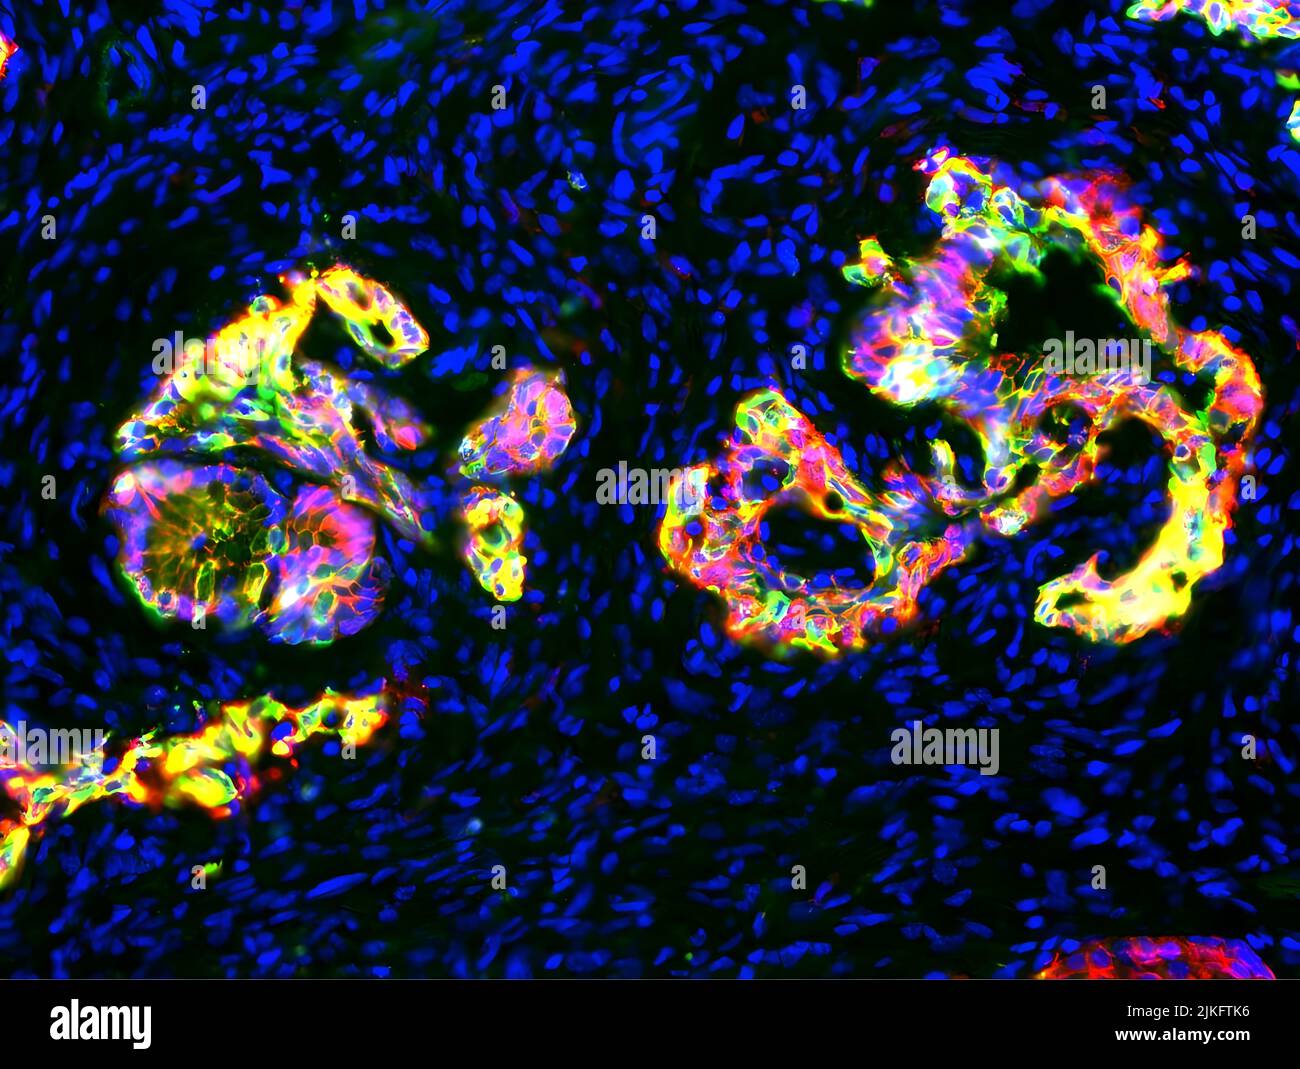 In questa immagine accattivante presentata nella mostra Research as Art dell'Università dello Utah del 2016, il rosso indica una proteina cheratina trovata nel citoscheletro delle cellule precancerose, il verde, una proteina di adesione cellulare chiamata e-caderina e il tuorlo, le aree in cui sono presenti le due proteine. Infine, blu segna i nuclei cellulari di cellule immunitarie abbondanti e fibroblasti che sono cresciuti e infiltrati l'organo come un tumore si è formato. Insieme, essi dipingono un affascinante nuovo ritratto di adenocarcinoma ducale pancreatico (PDAC), la forma più comune di cancro pancreatico. Foto Stock